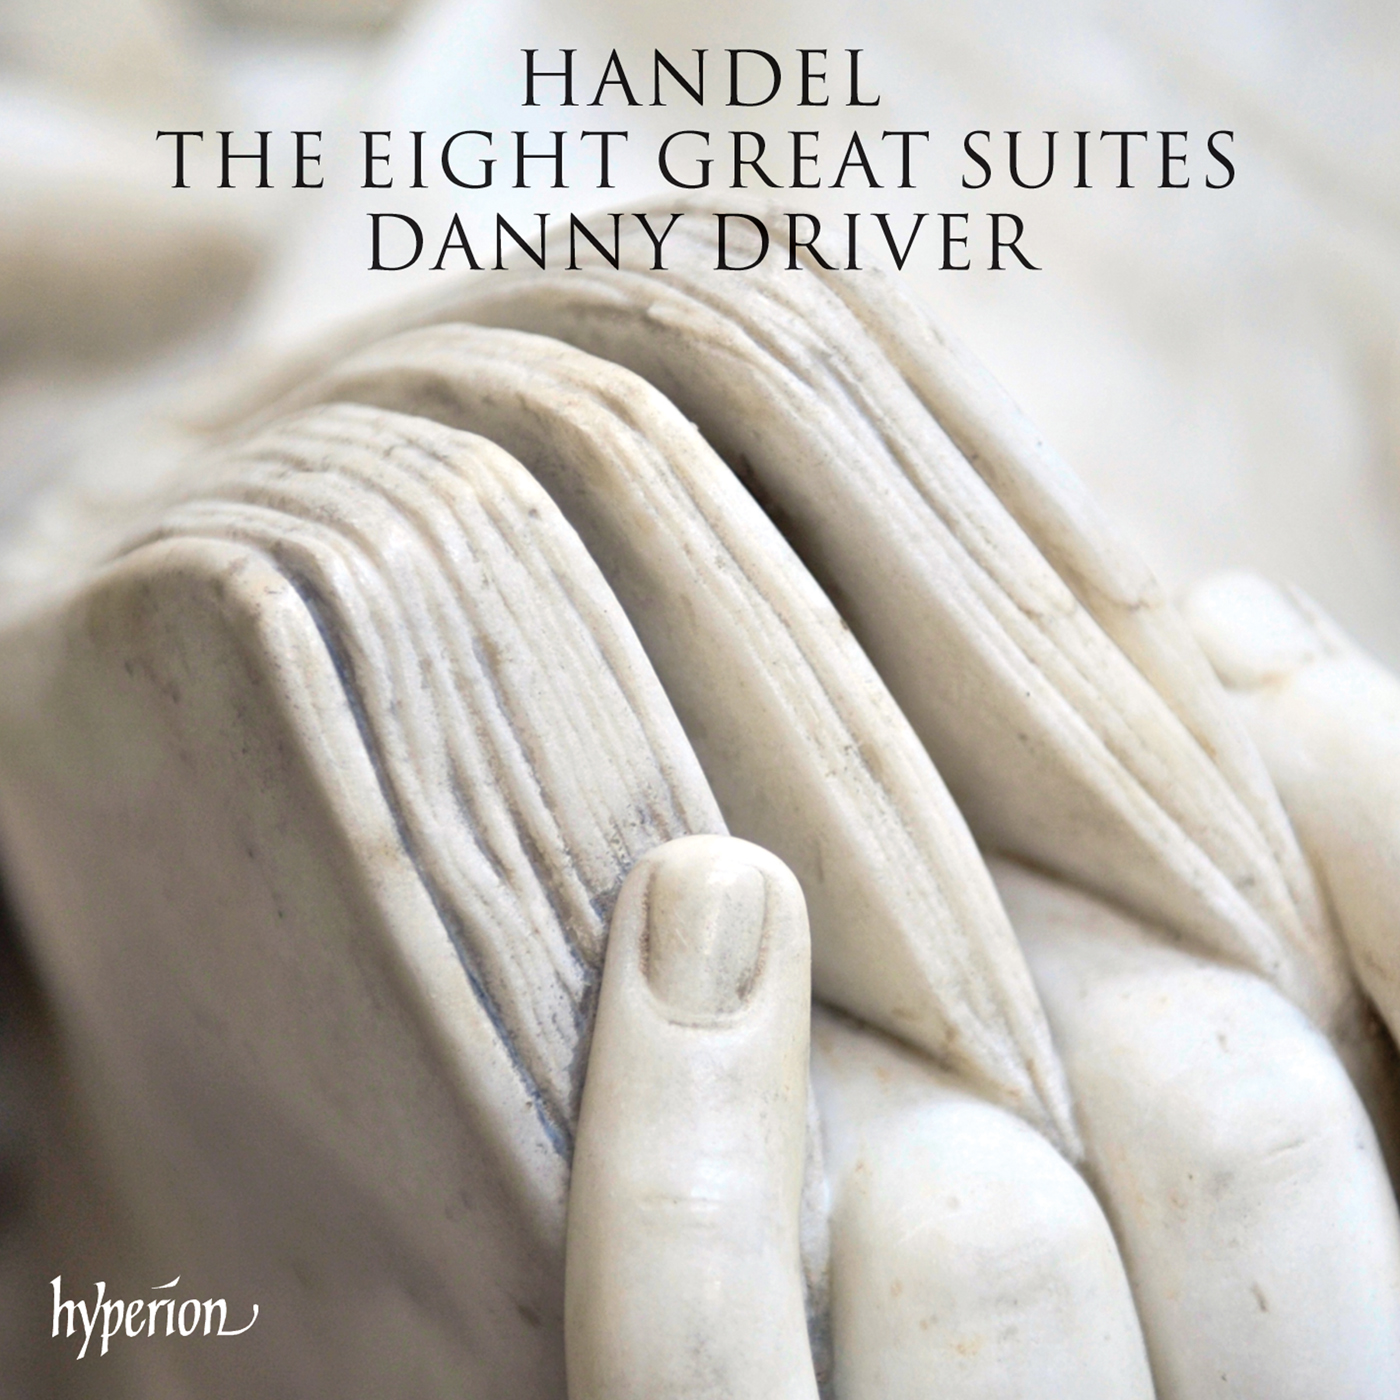 Handel: The Eight Great Suites